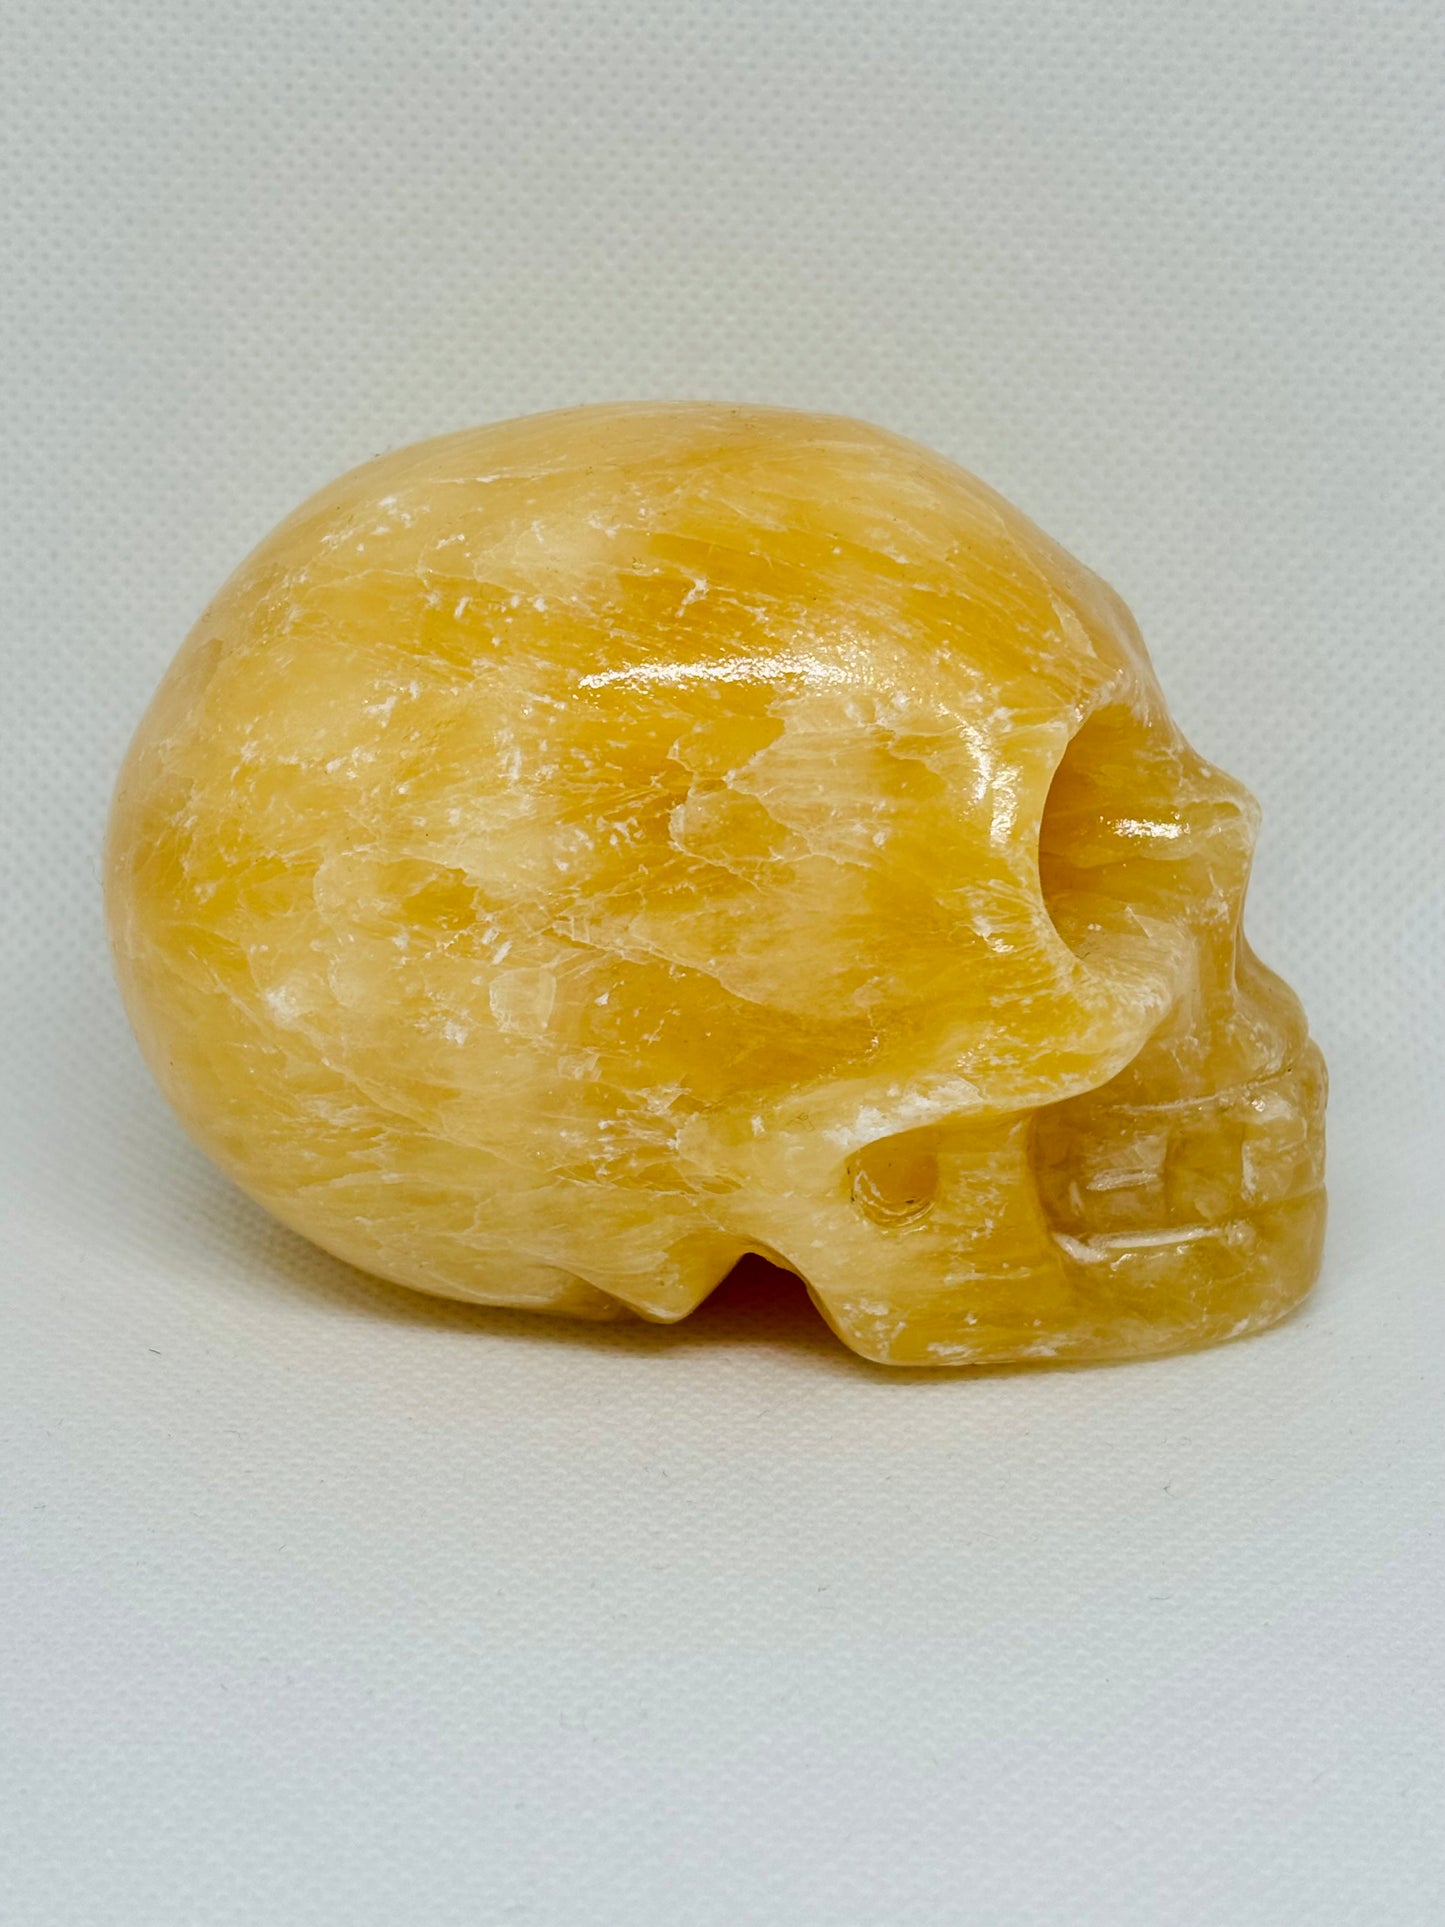 Carved Crystal Skull 1.1lb #OC